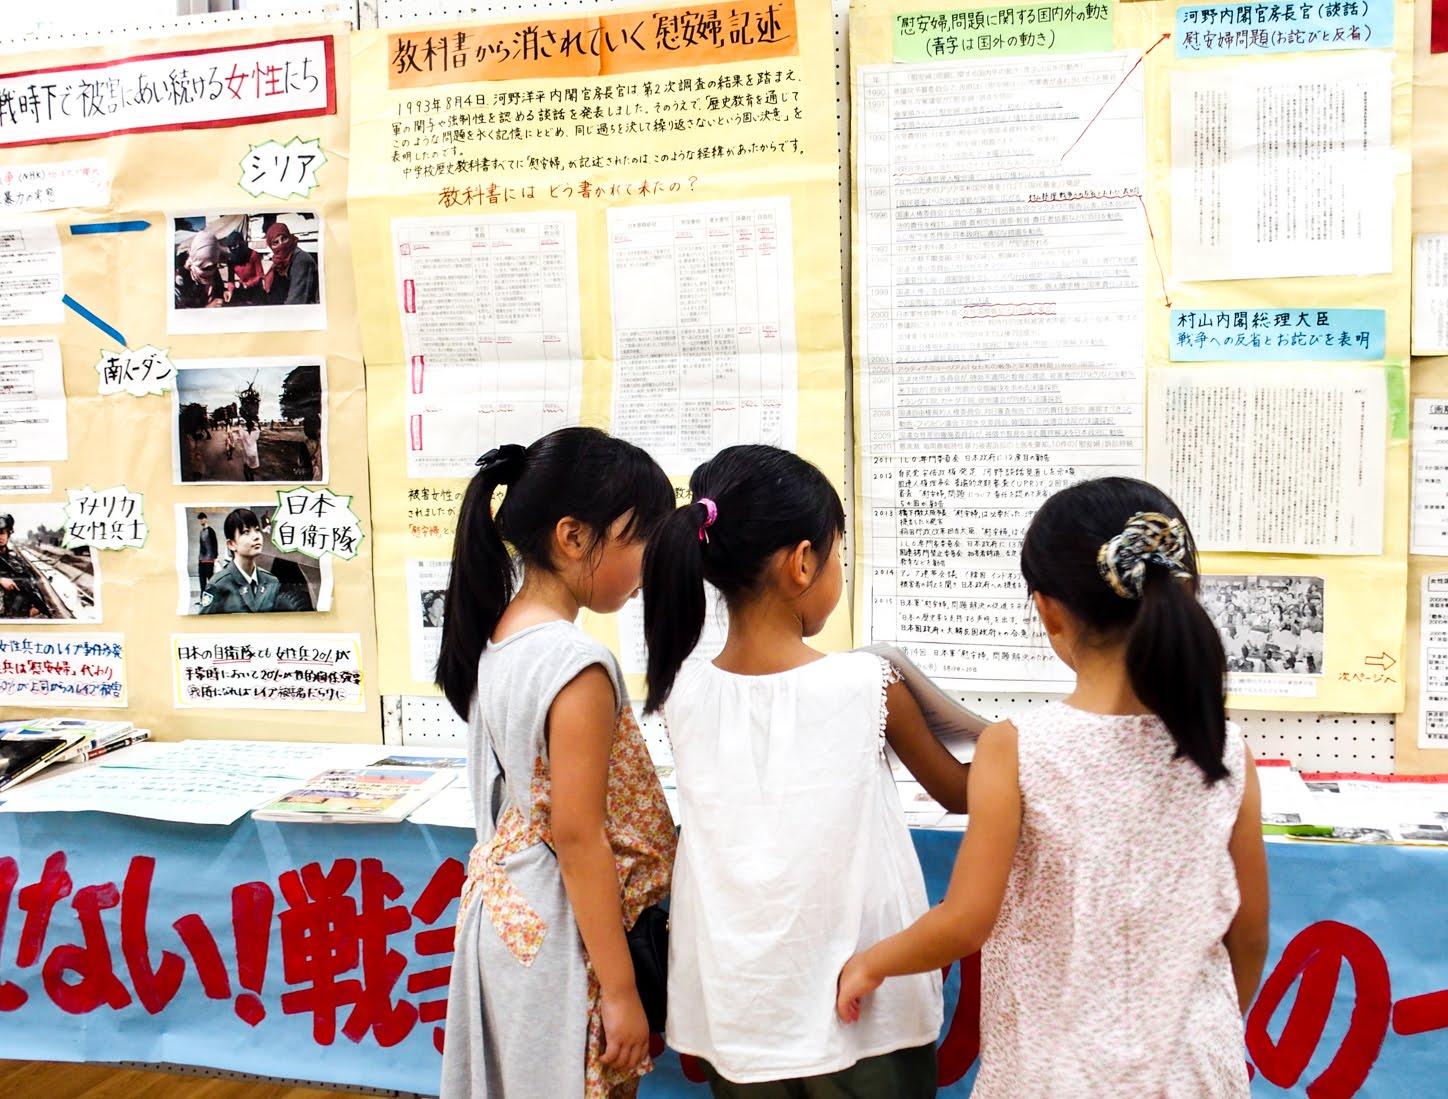 兵庫民報web版 戦争をやめるためできることをしたい 小学生が感想 尼崎平和のための戦争展